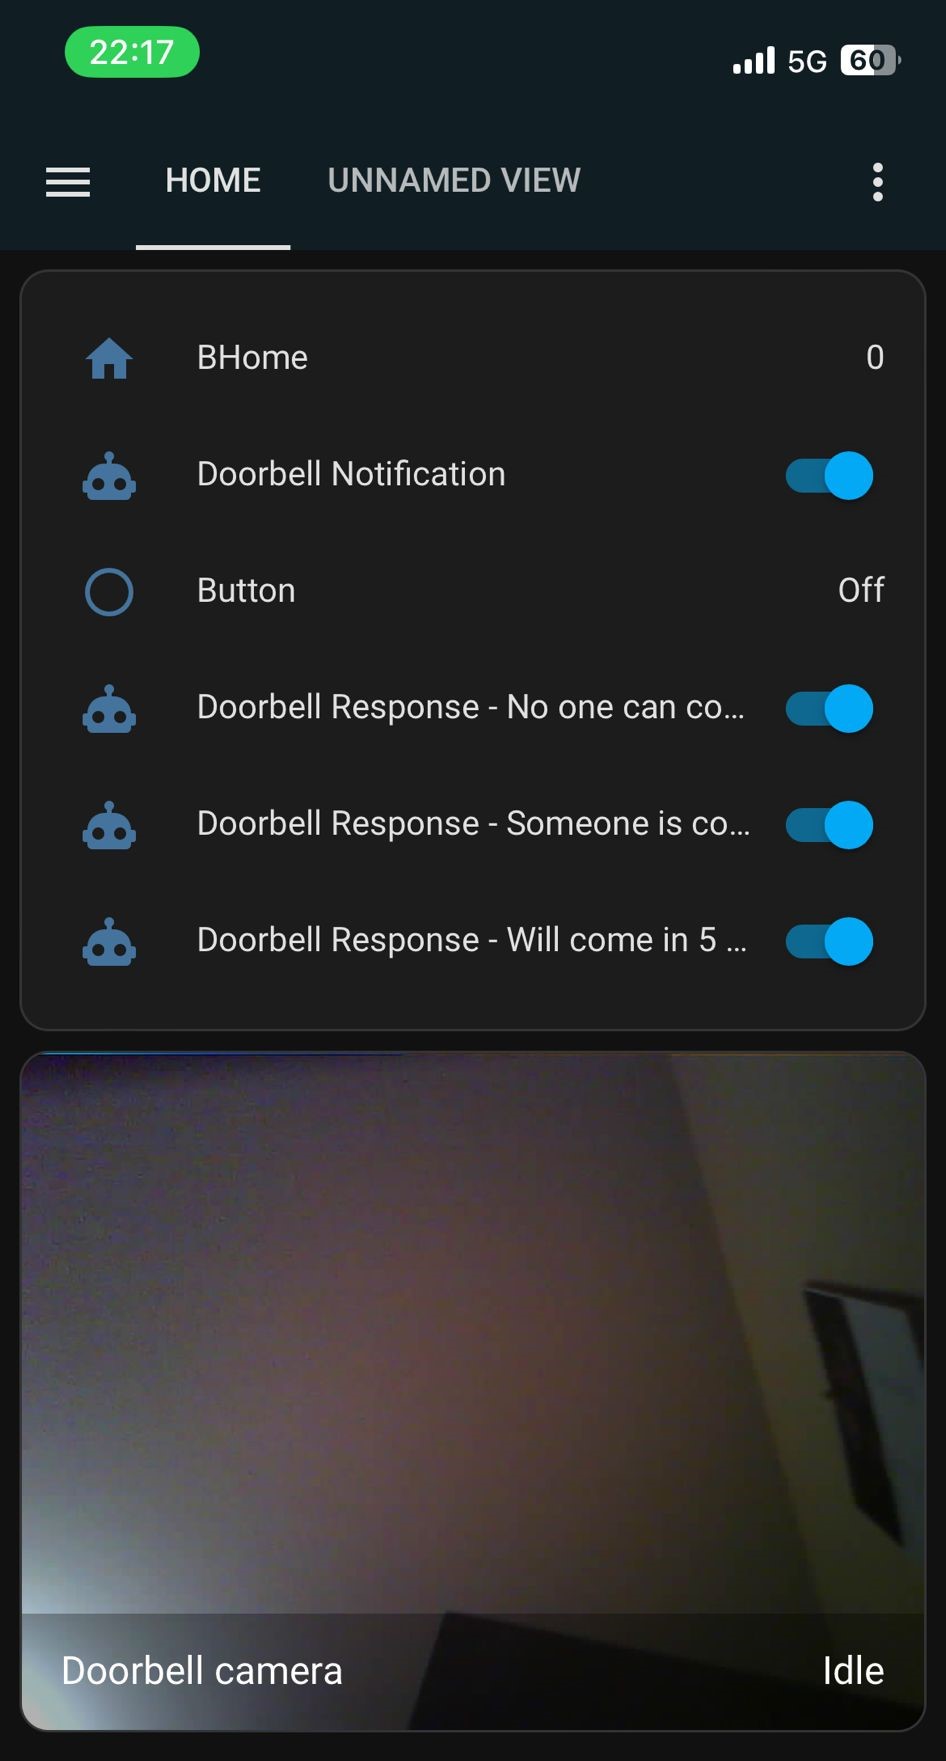 smart_doorbell_mobile_app_dashboard_2.jpg